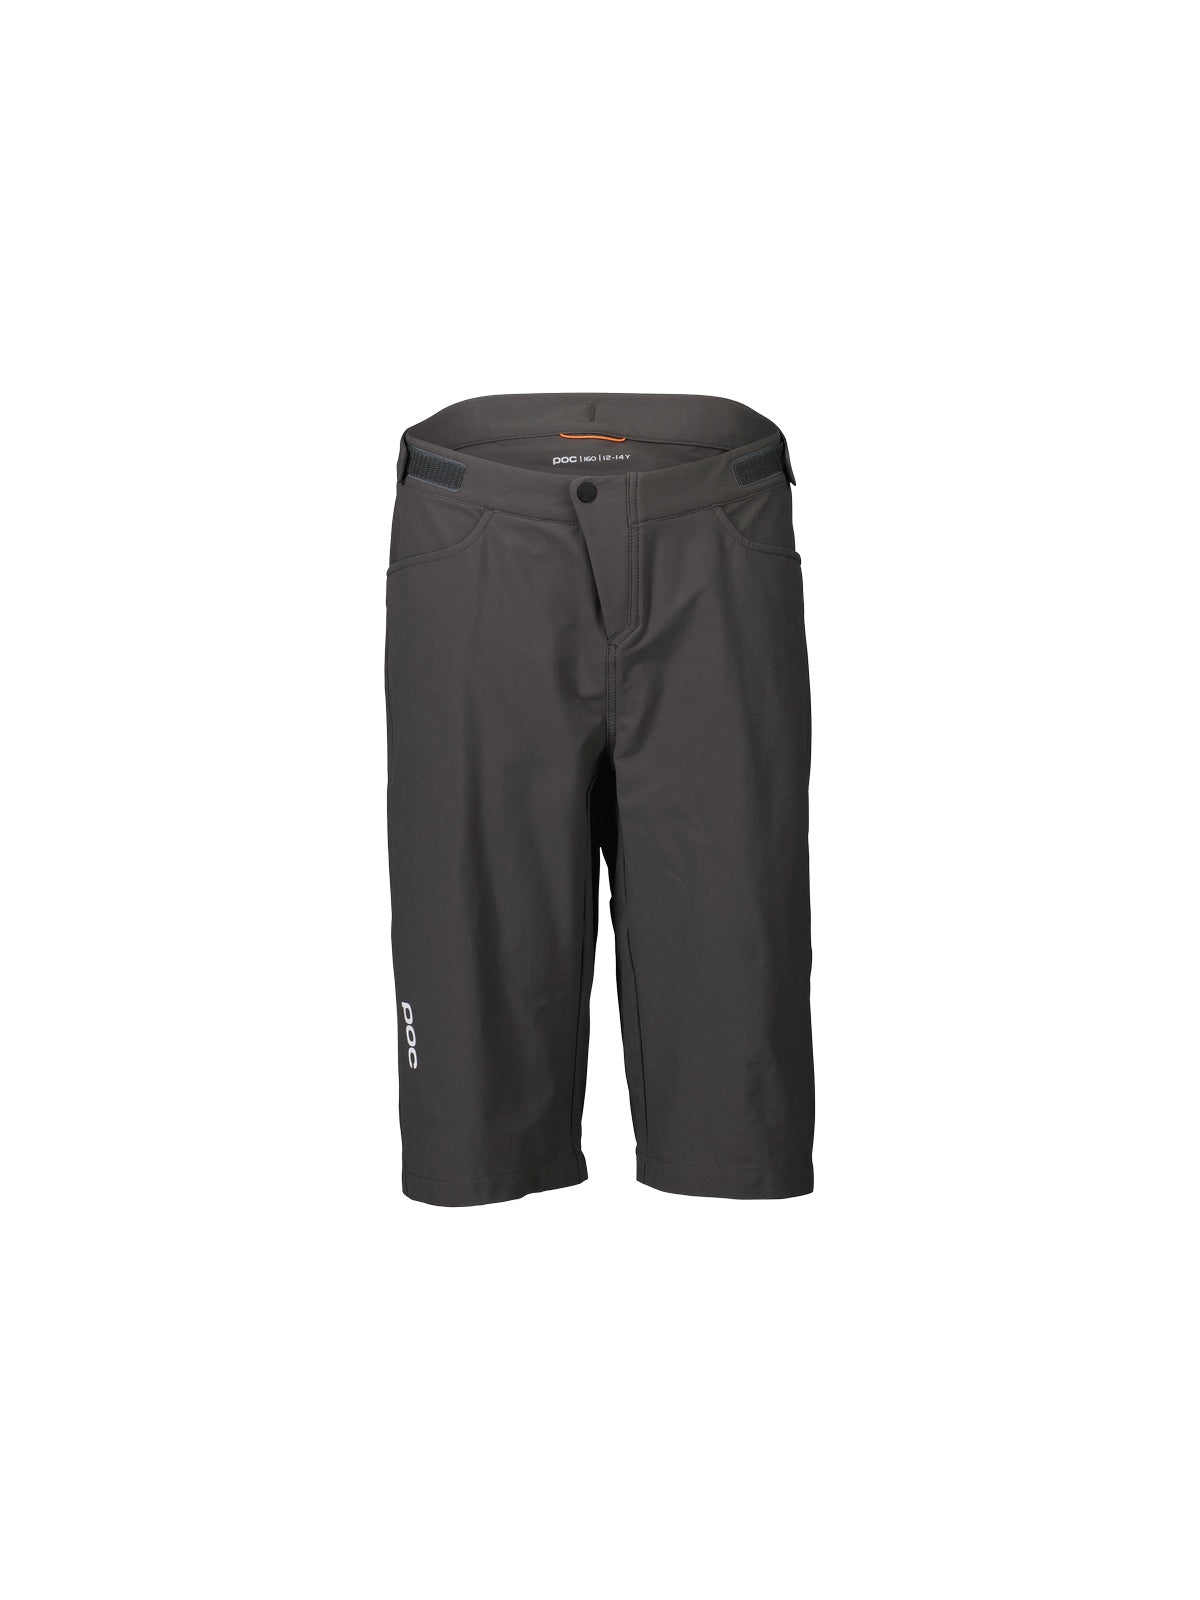 Szorty rowerowe juniorskie POC Y's Essential MTB Shorts - Sylv. Grey